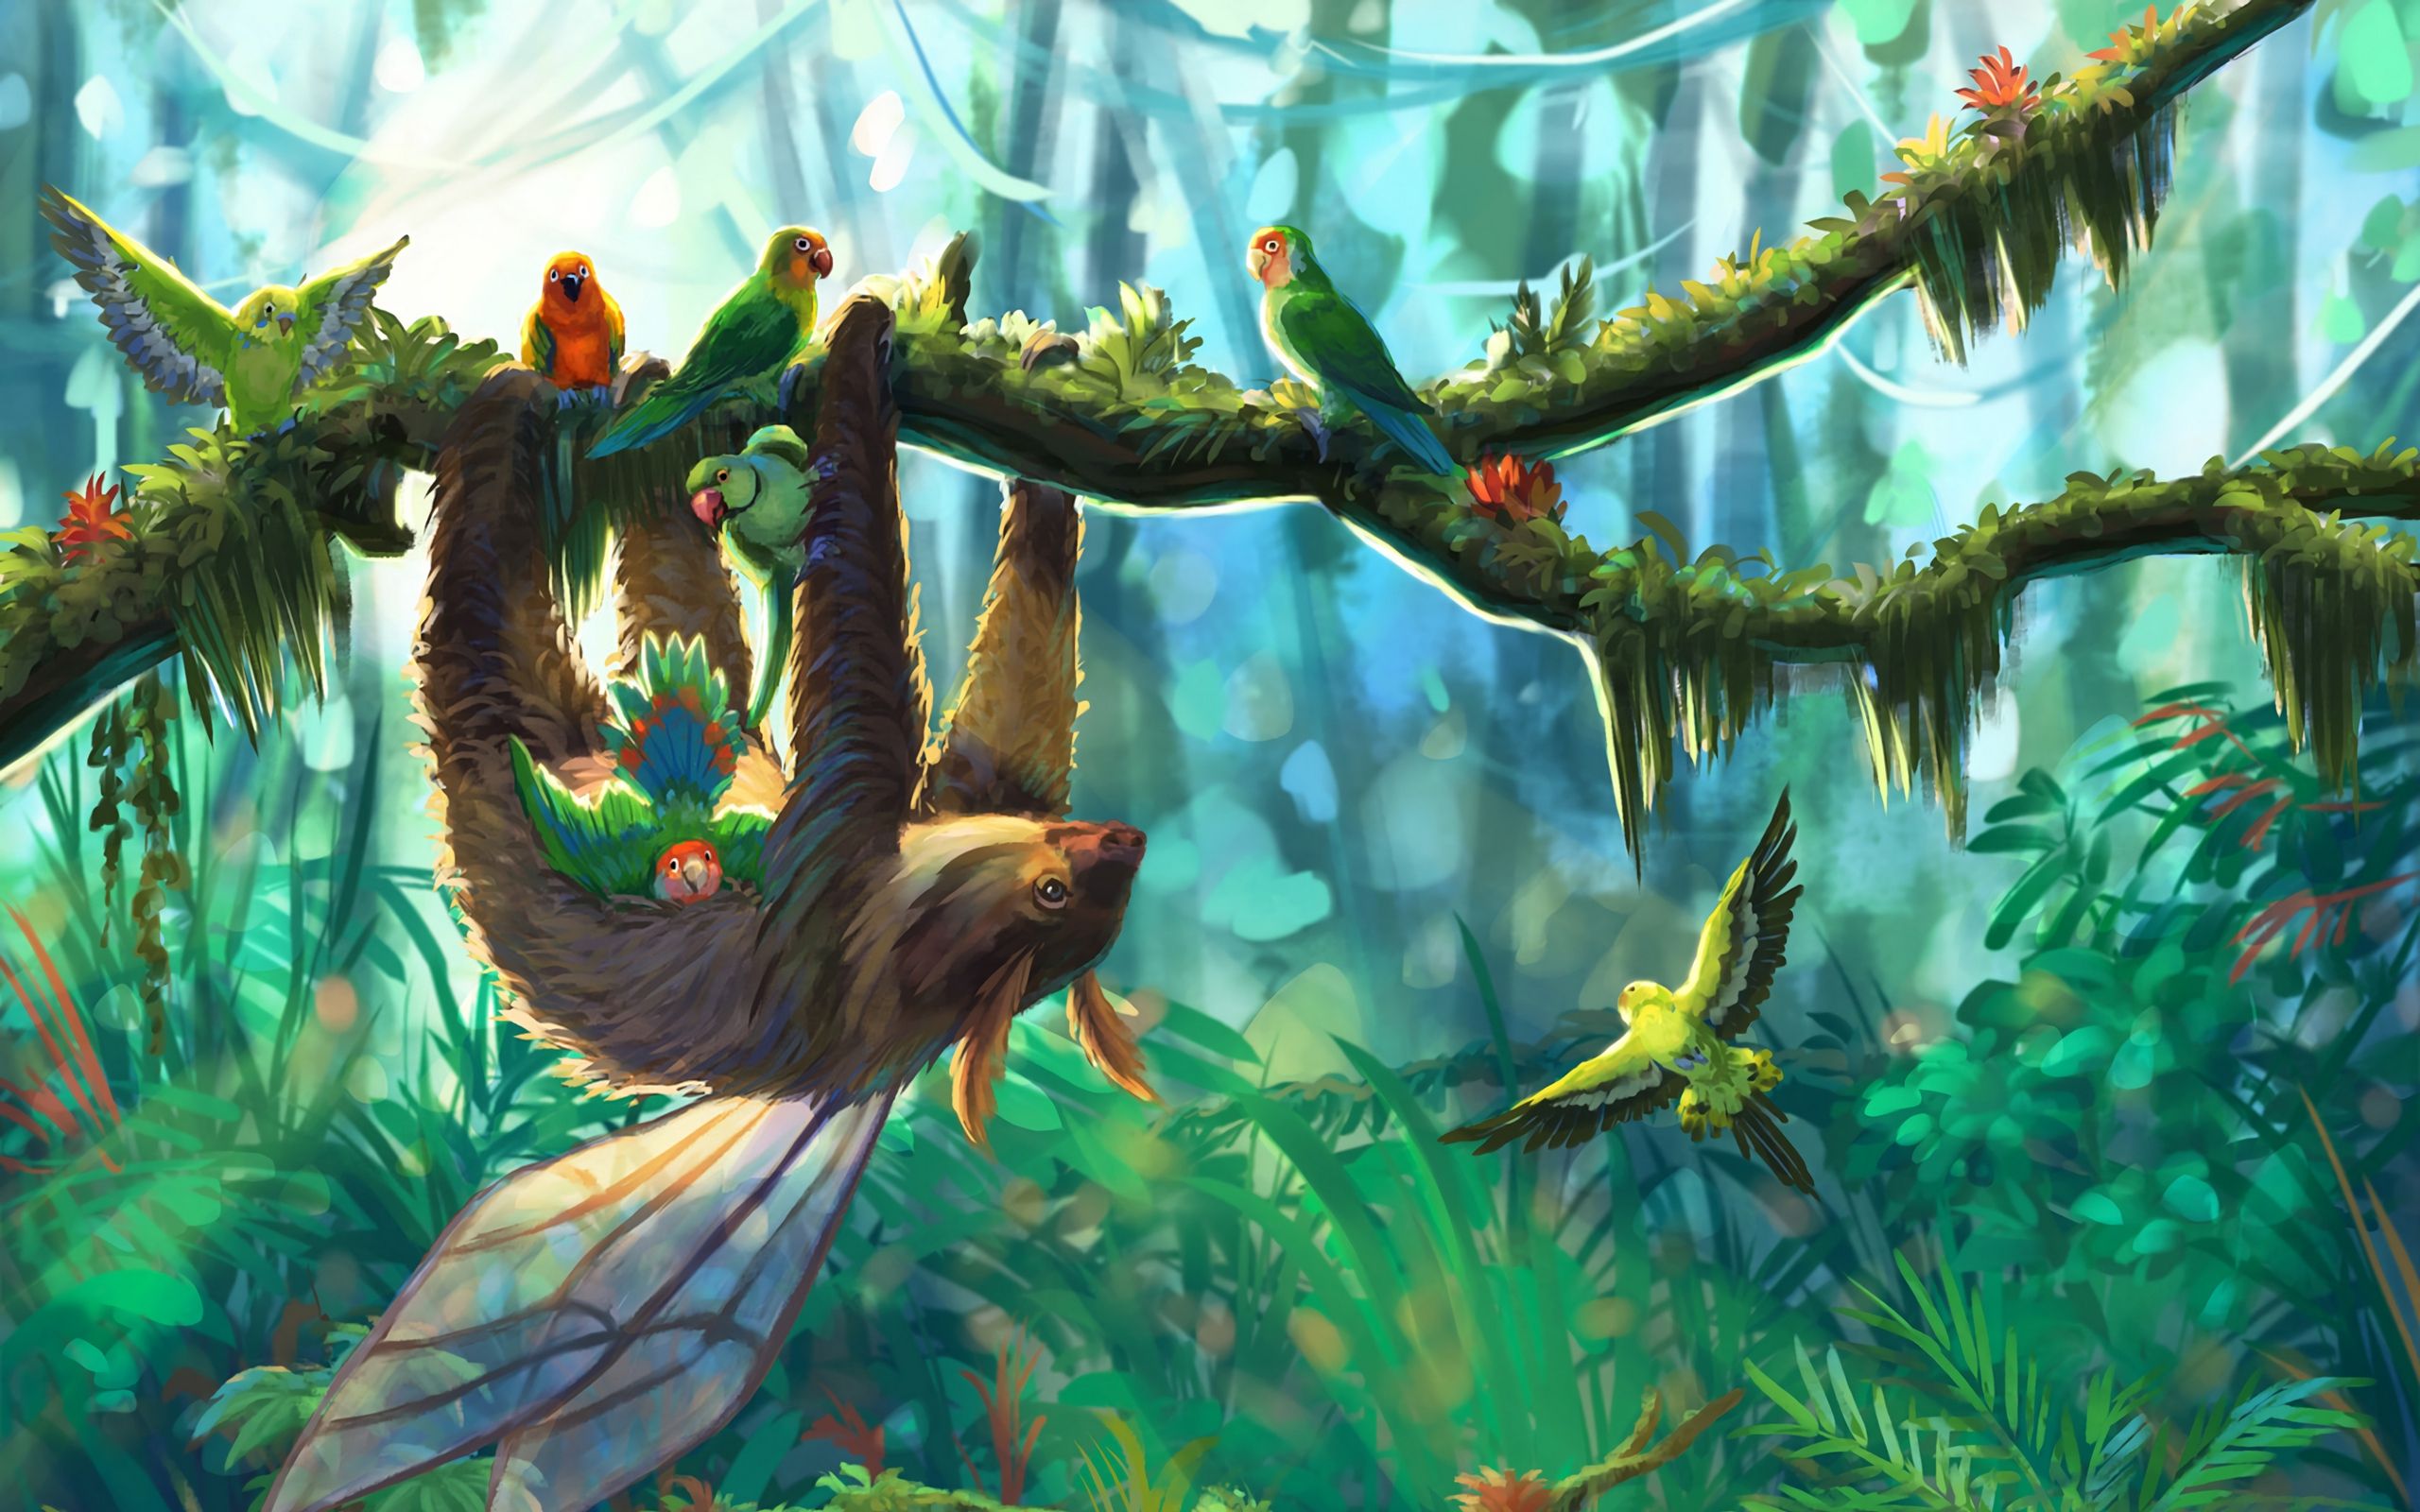 Download wallpaper 2560x1600 sloth, parrots, jungle, art, branch